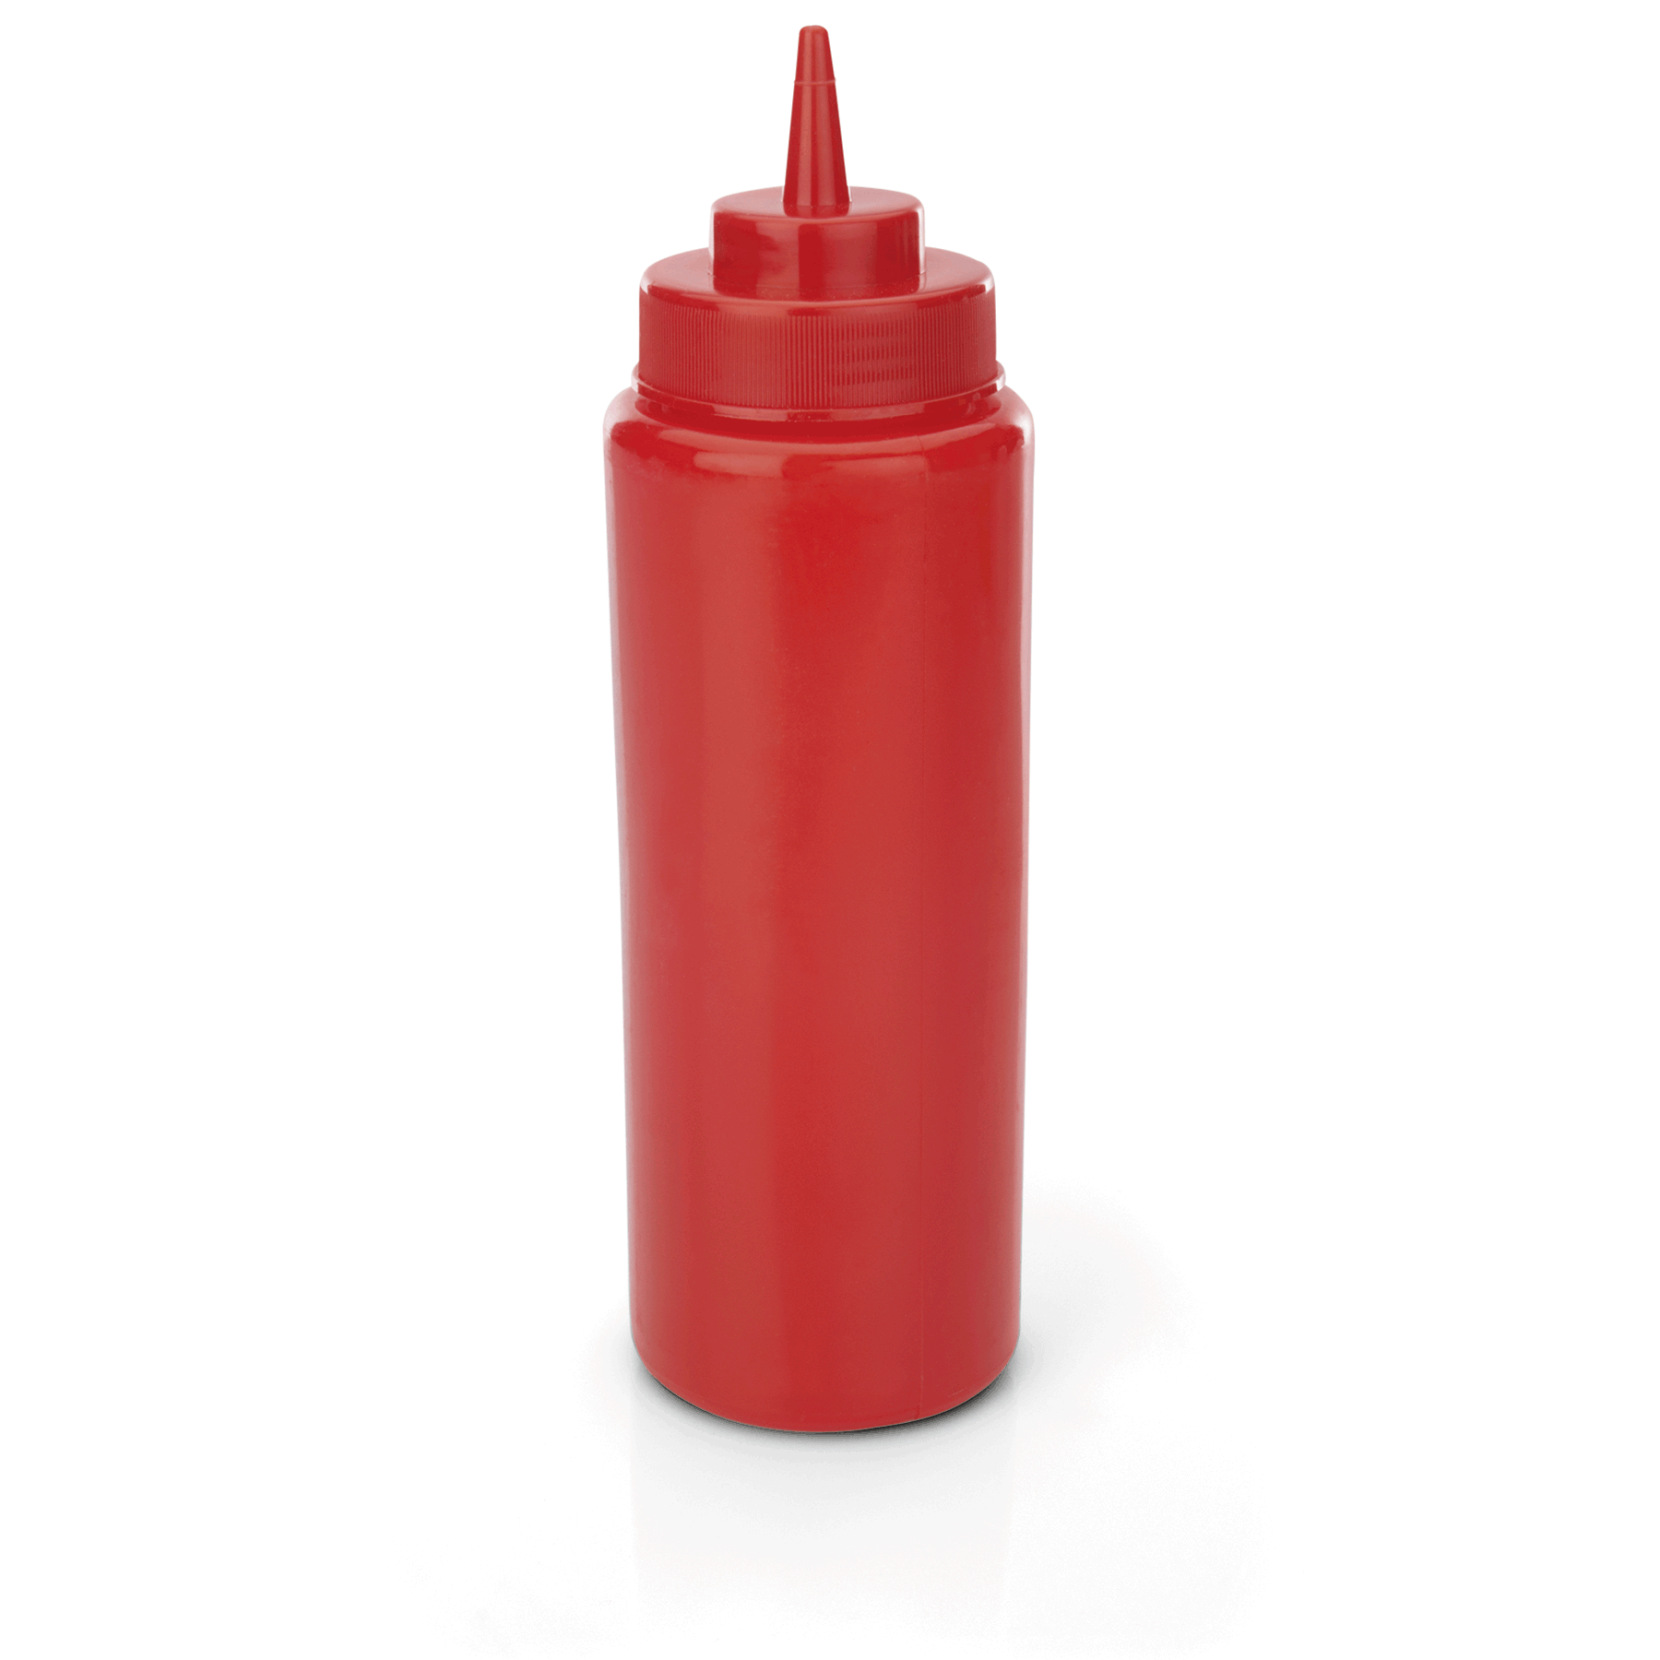 Quetschflasche, 0,95 ltr., rot, Polyethylen